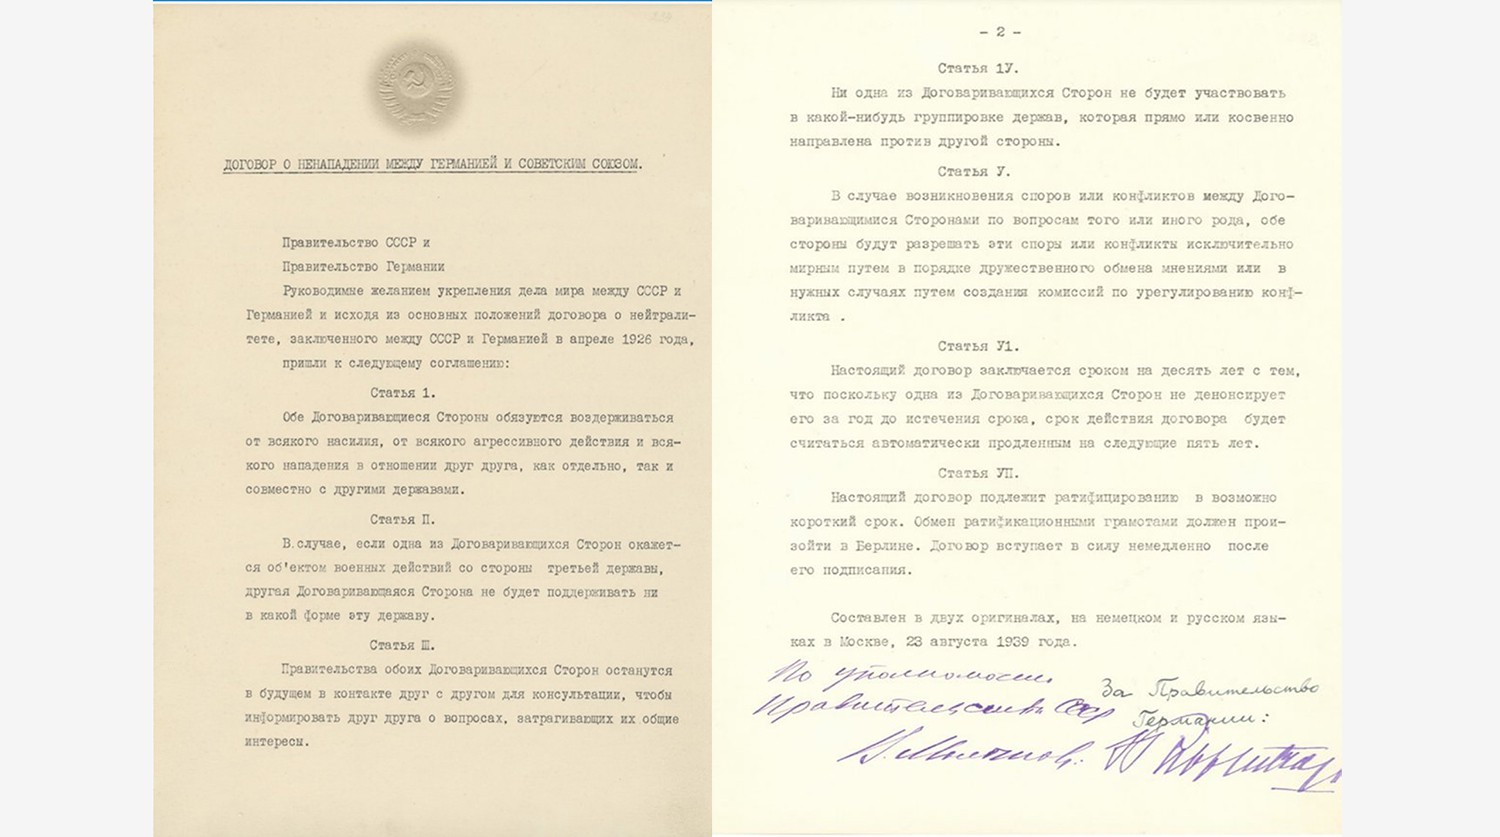 Договор о ненападении между СССР и Германией. 23 августа 1939 г. Советский оригинал на русском языке.